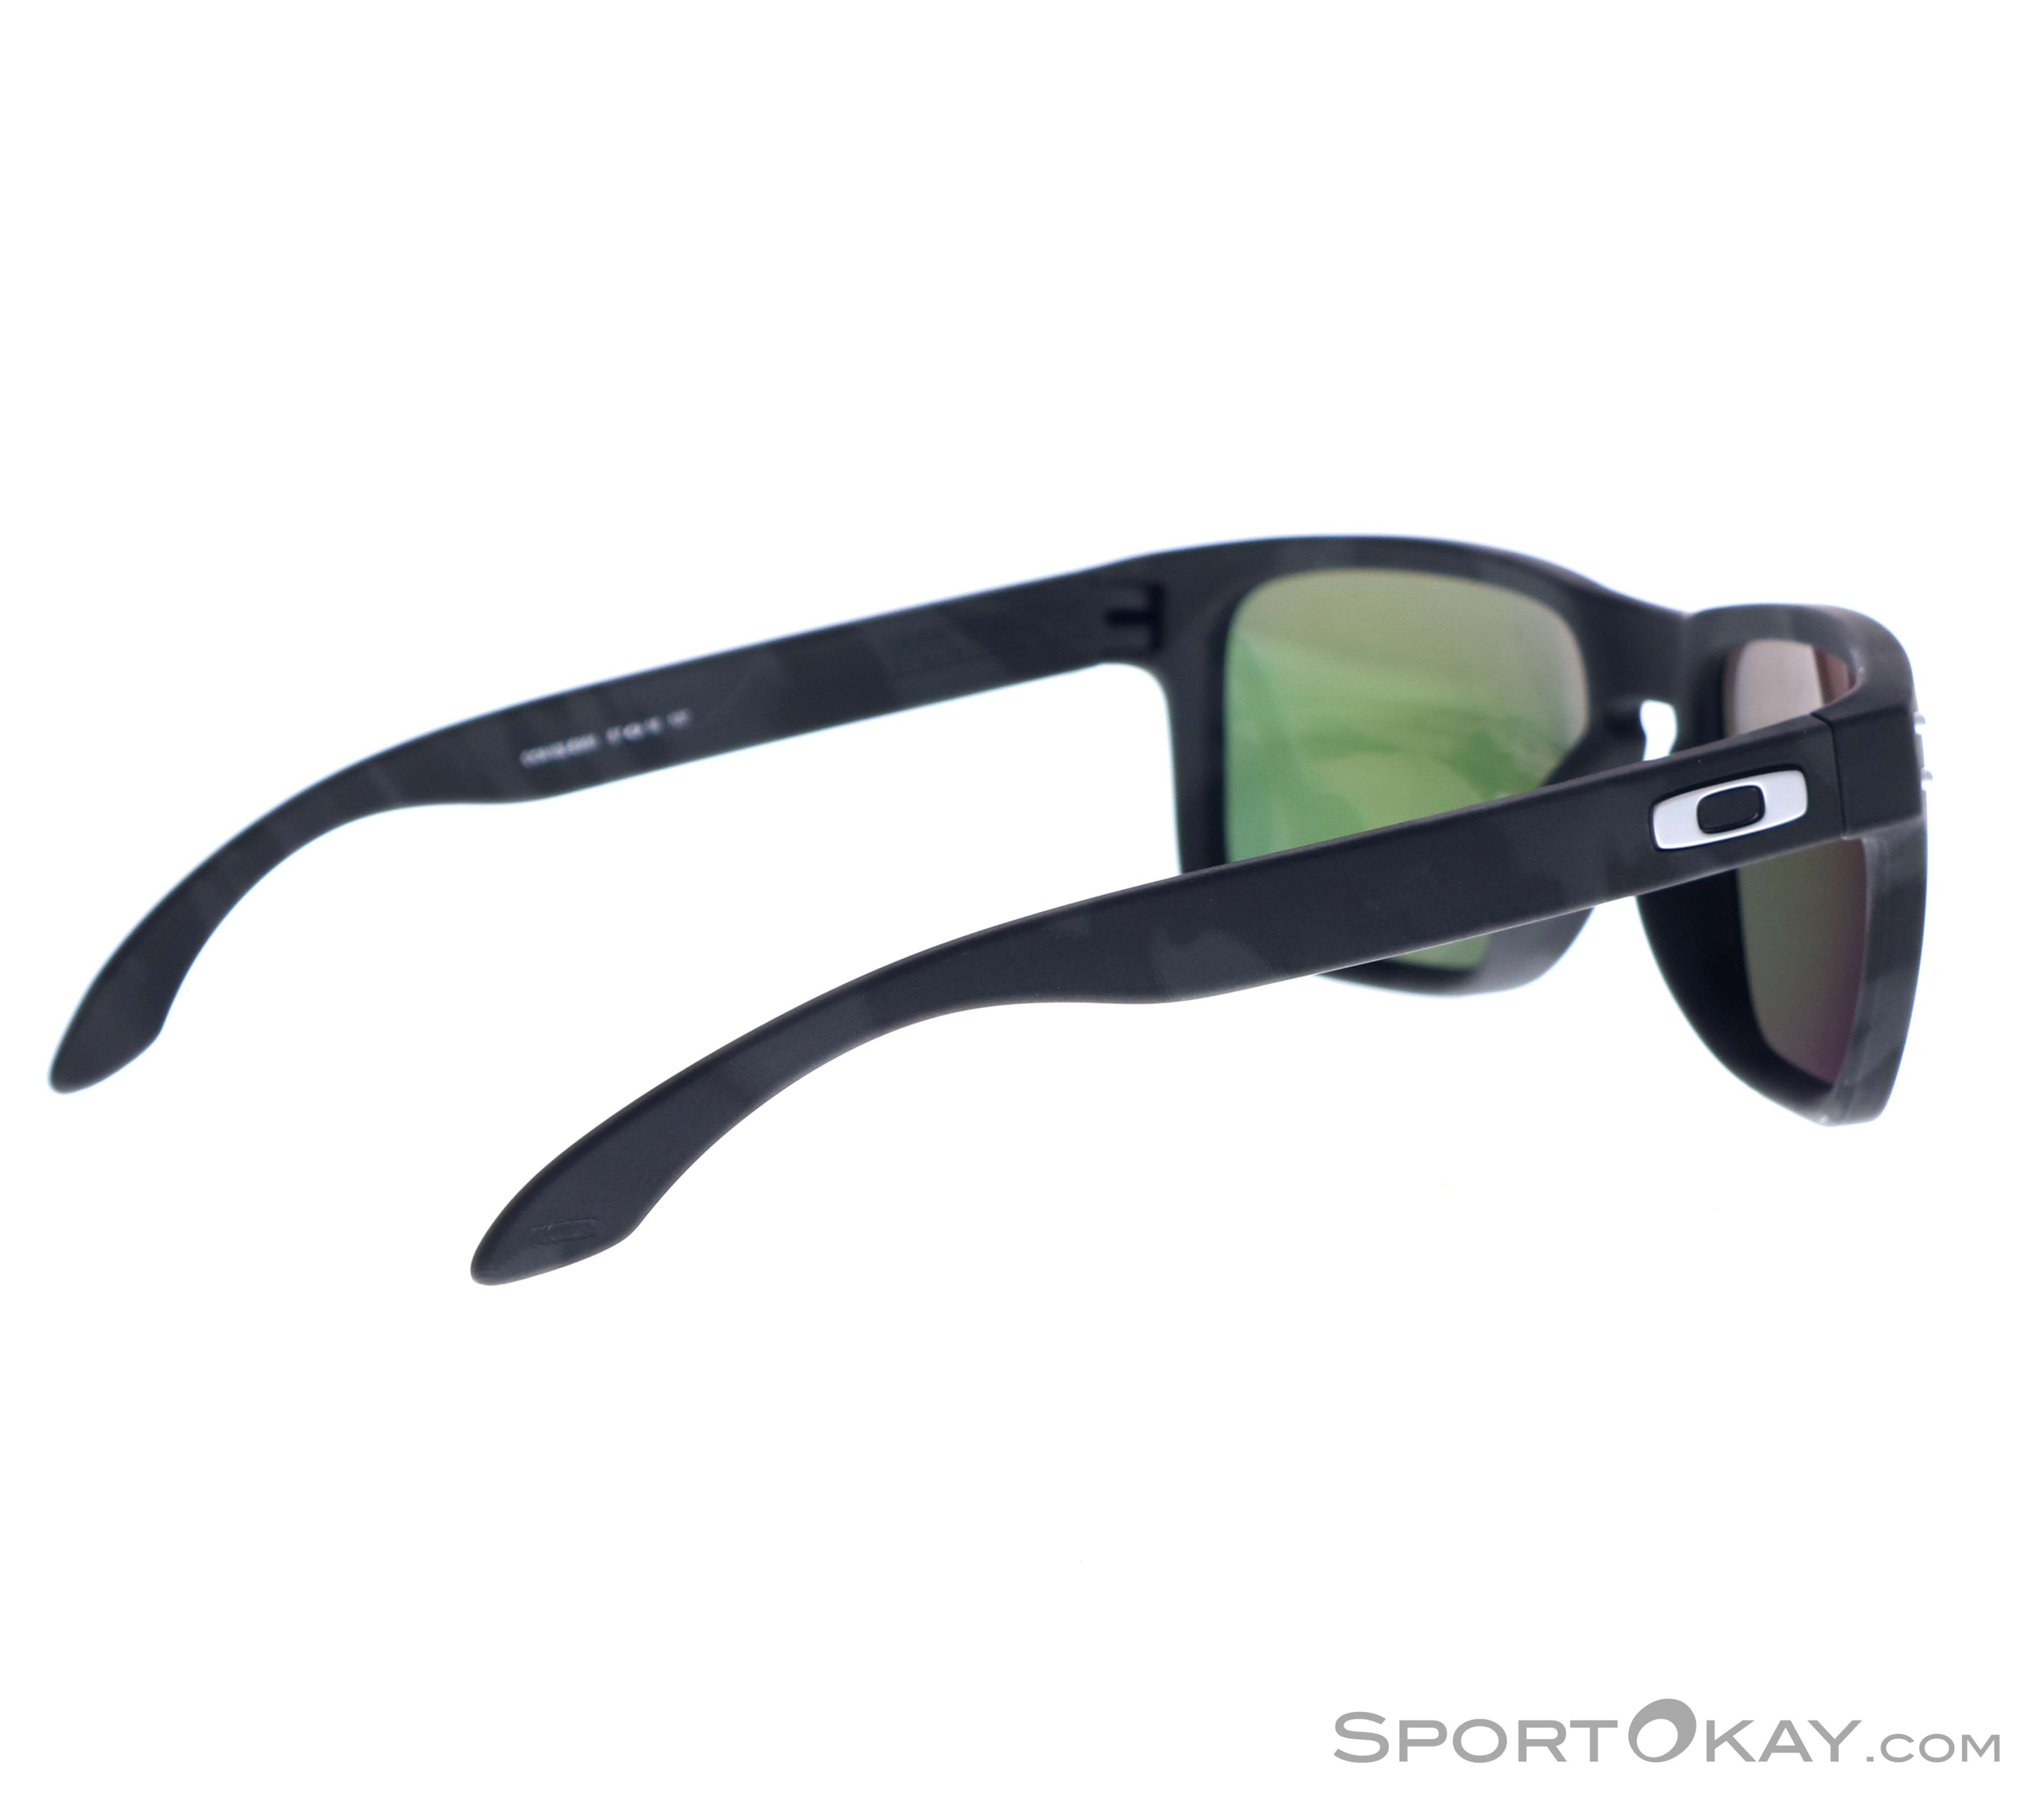 Oakley Holbrook Sunglasses - Fashion Sunglasses - Sunglasses - Fashion - All